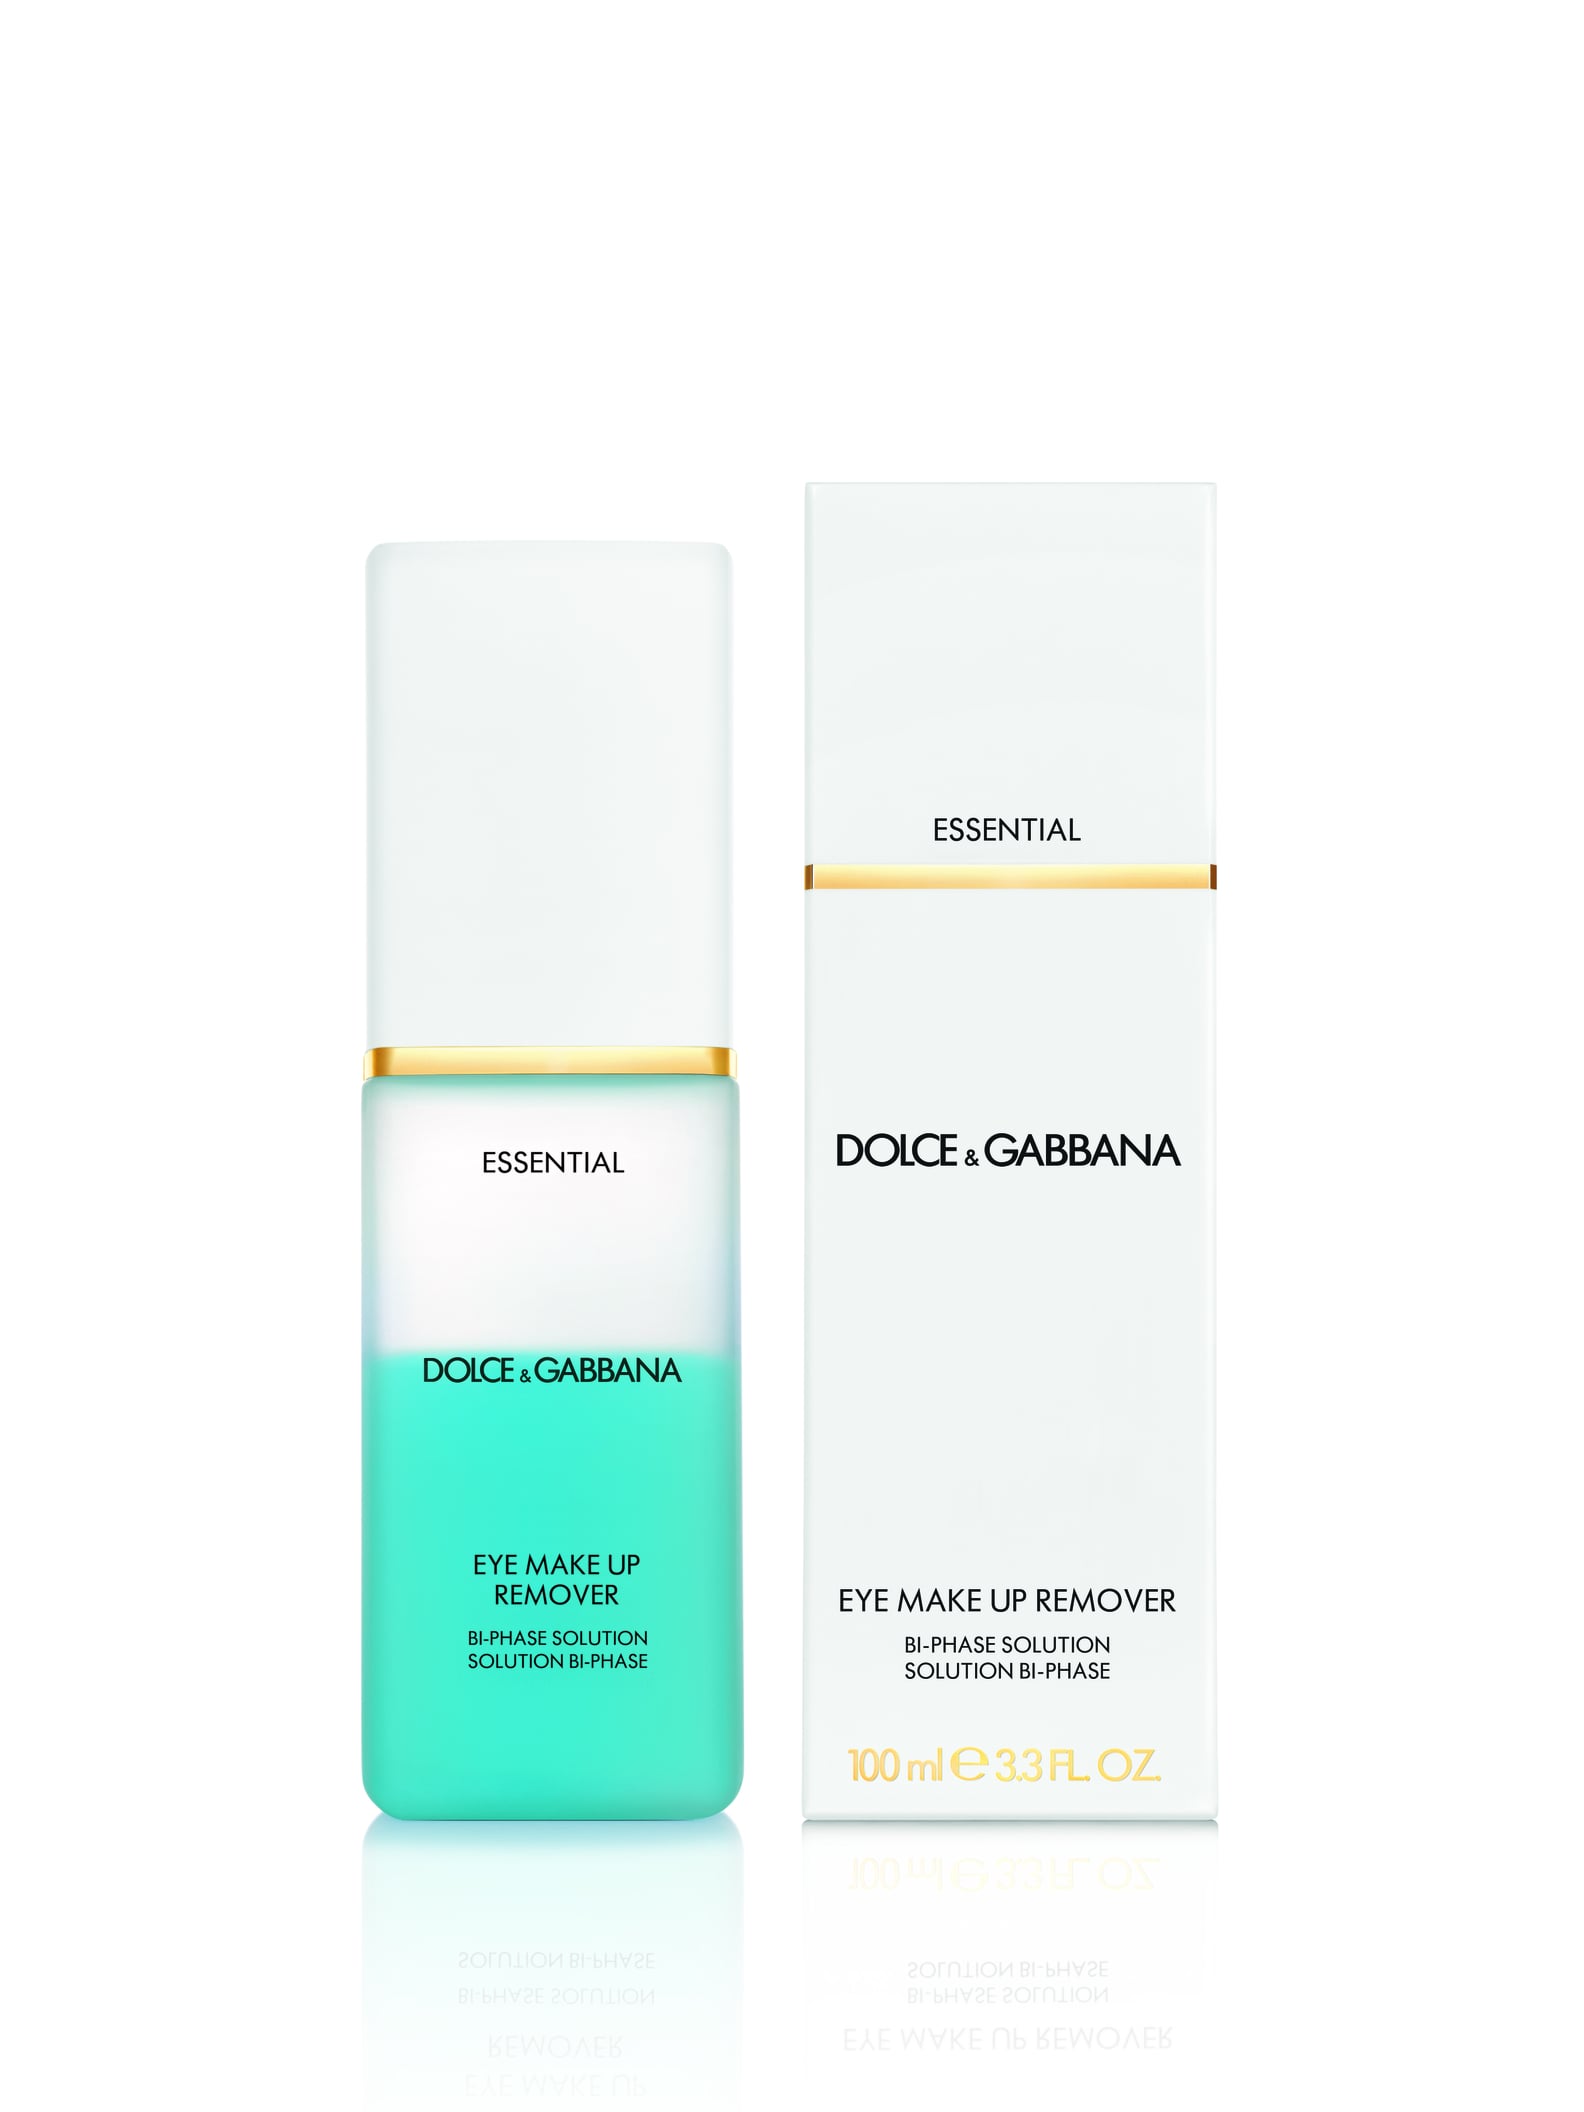 Dolce & Gabbana Skin Care | POPSUGAR Beauty